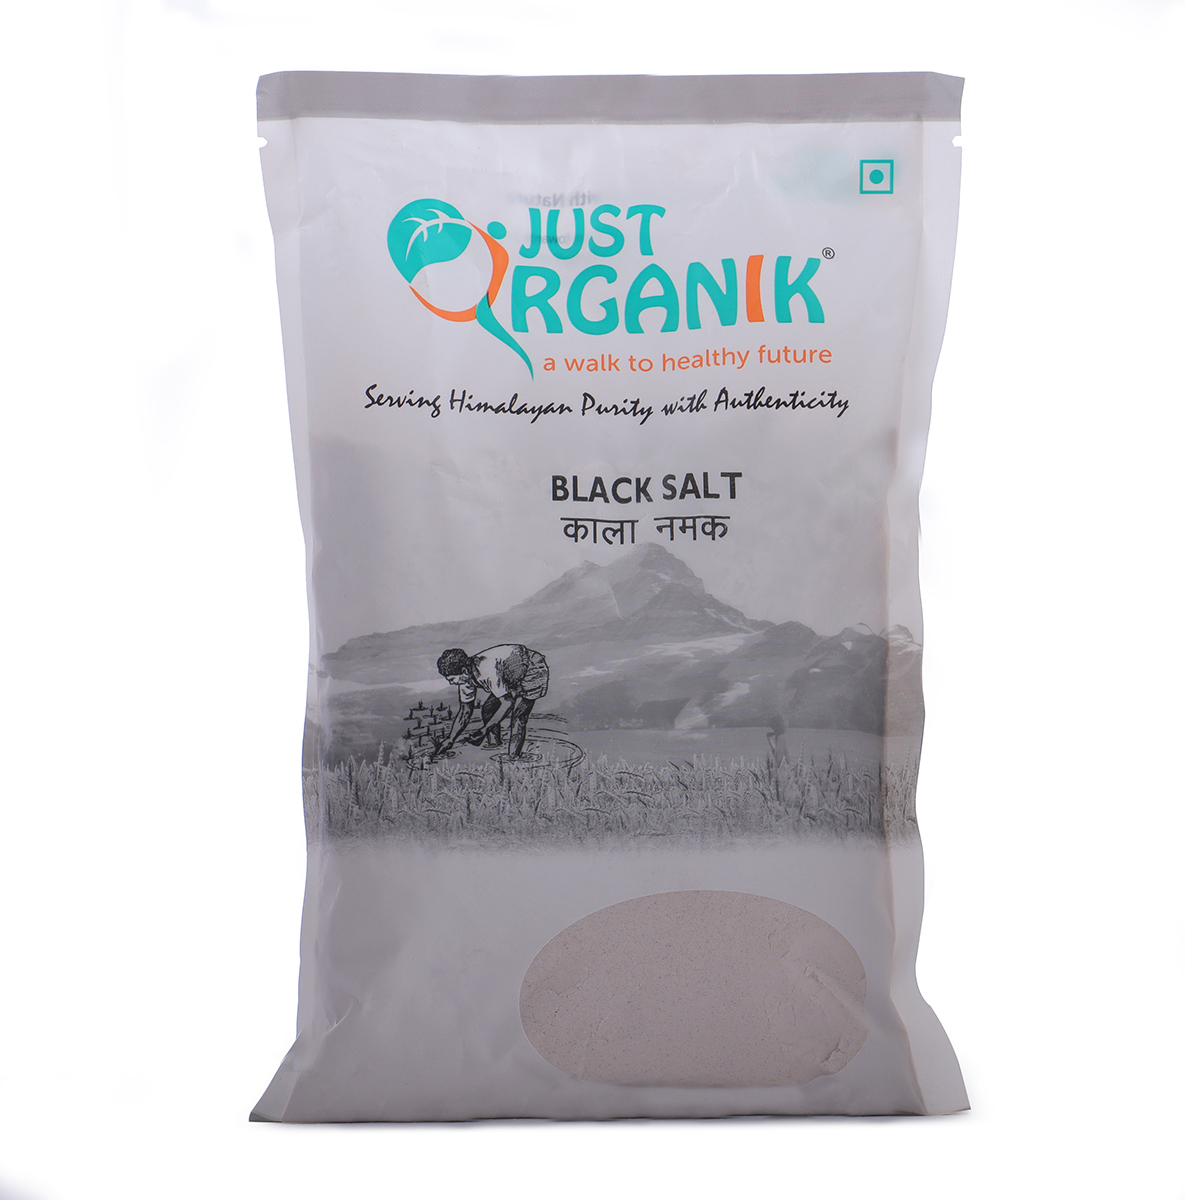 Just Organik Black Salt 2kg (pack of 4, 4x500g)